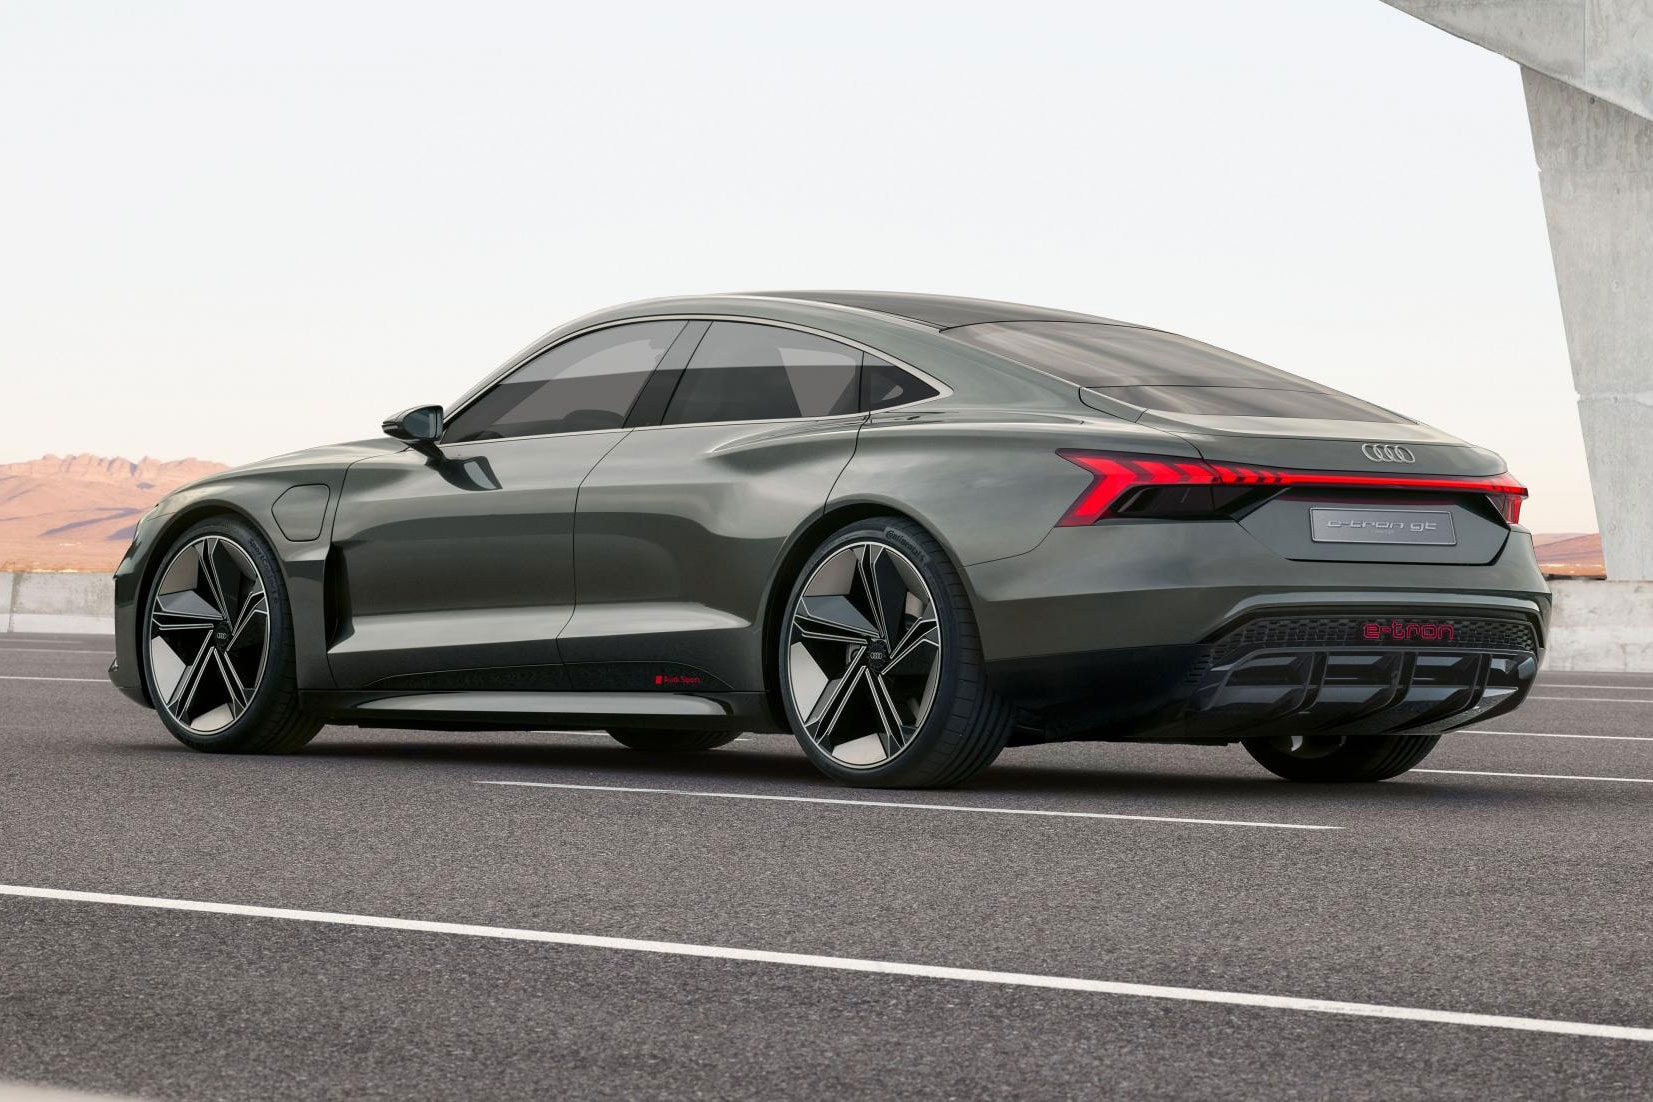 Audi E-Tron GT Electric Concept Car Unveil Vehicle Sportback SUV Los Angeles auto show 2018